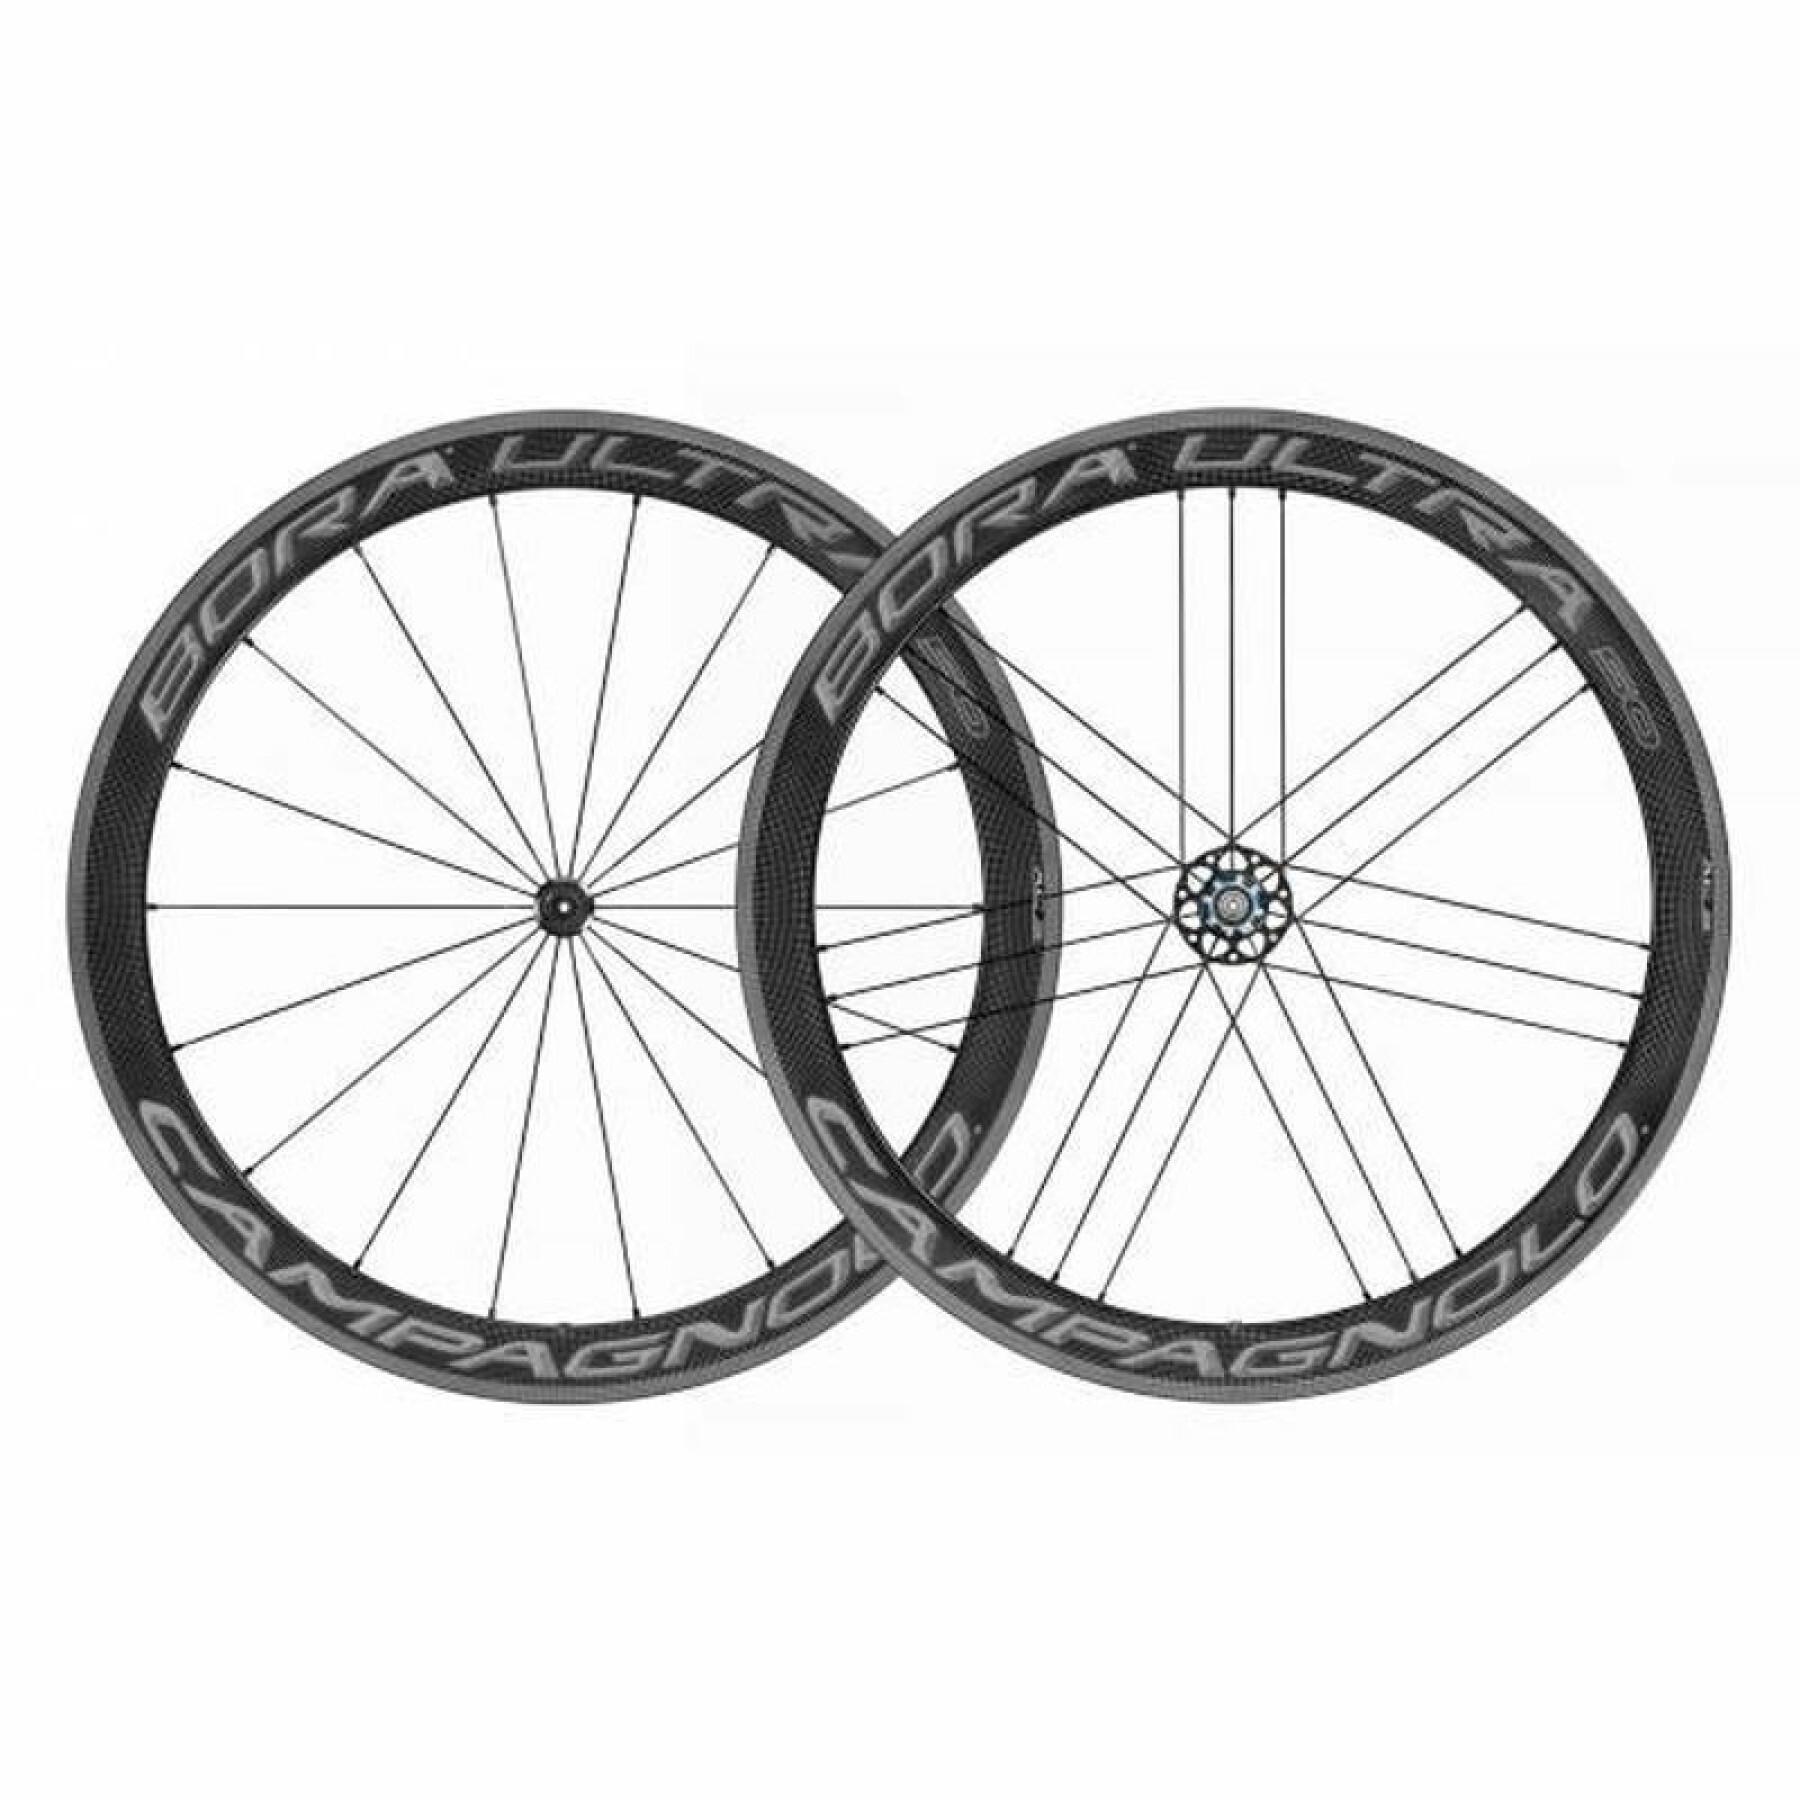 Hose wheels Campagnolo bora ultra dark 50